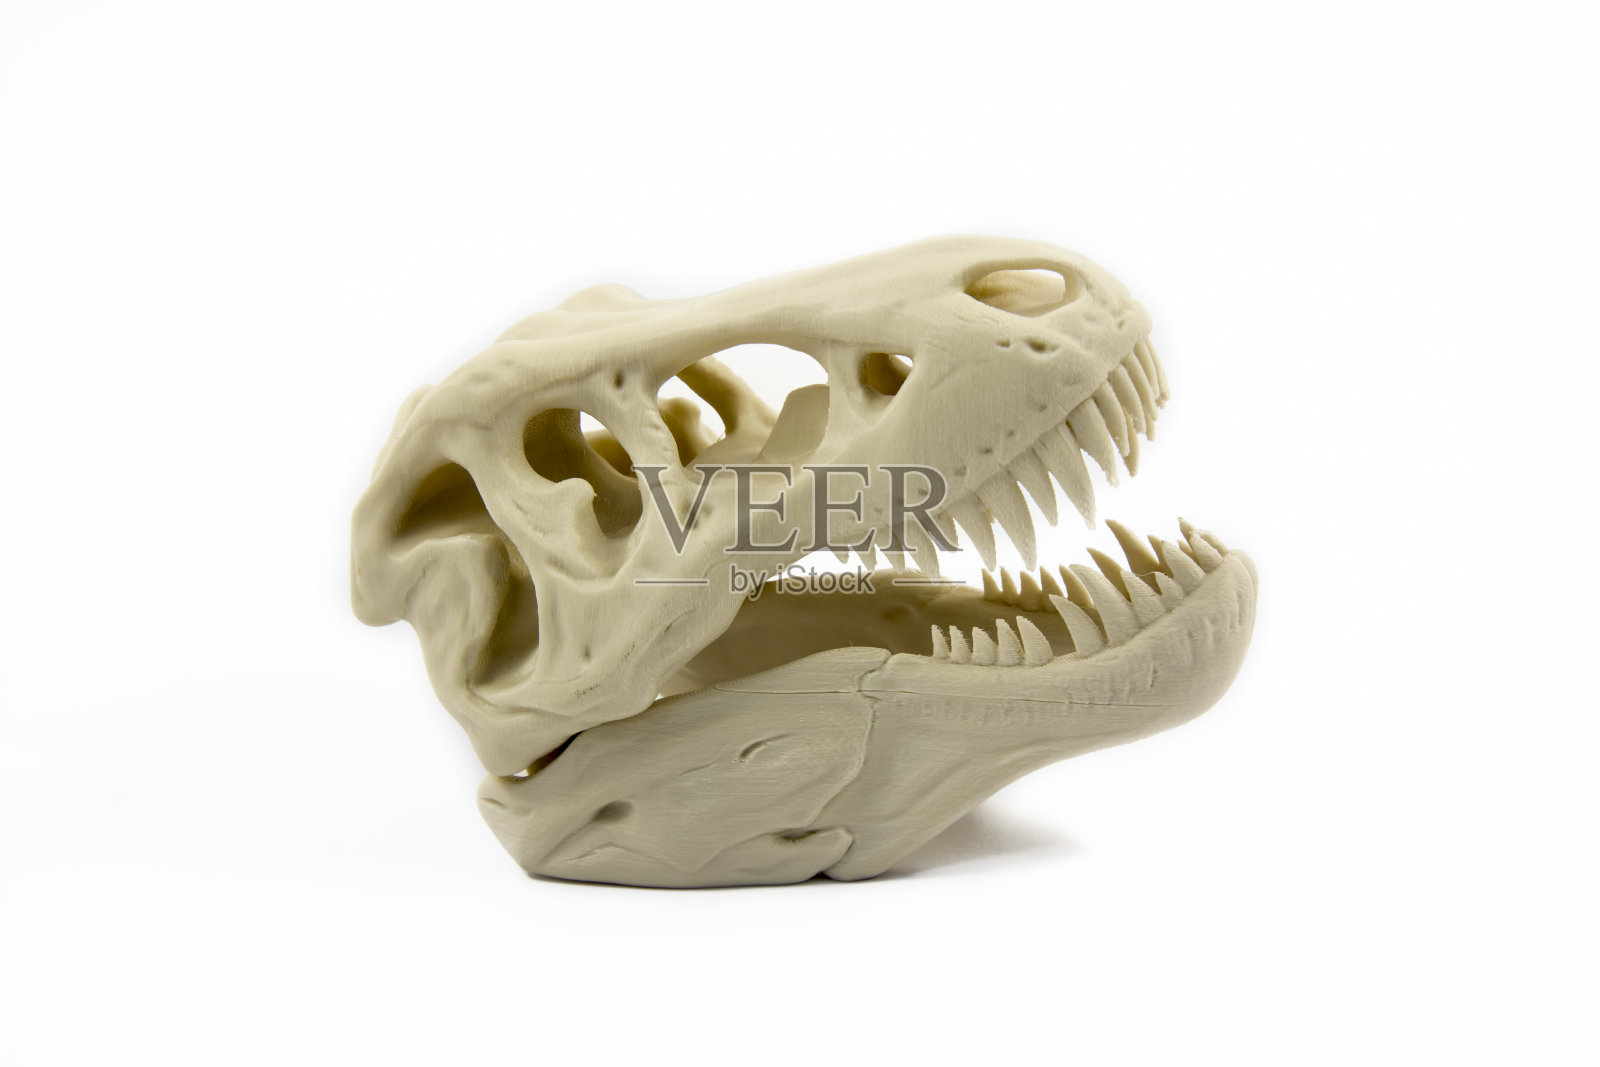 恐龙头骨的3D打印模型照片摄影图片